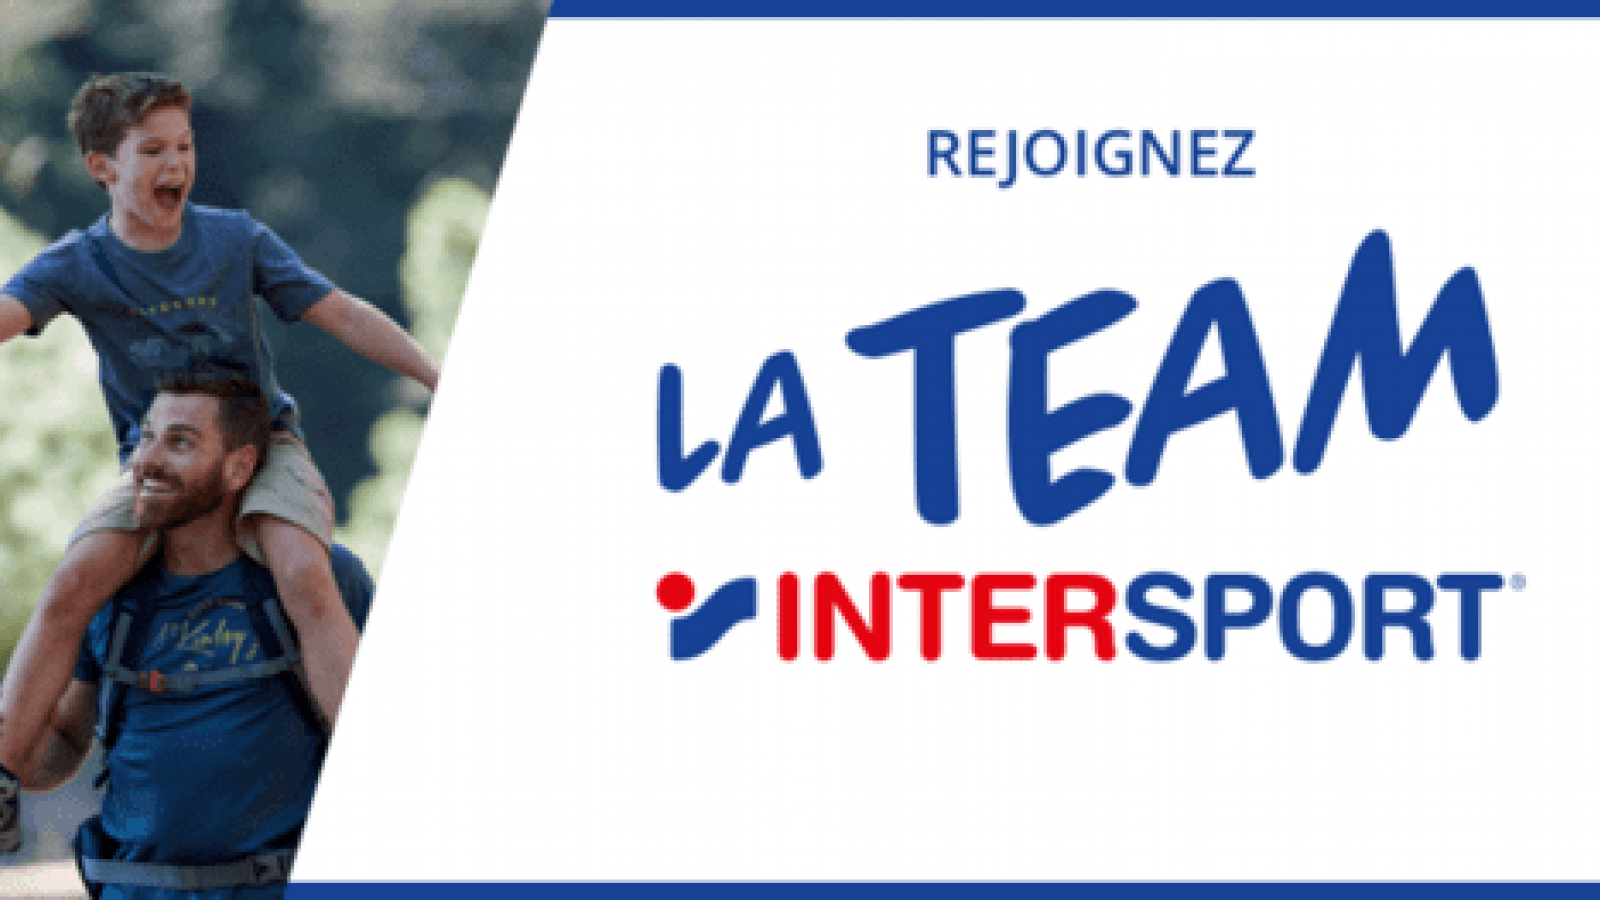 la team Intersport